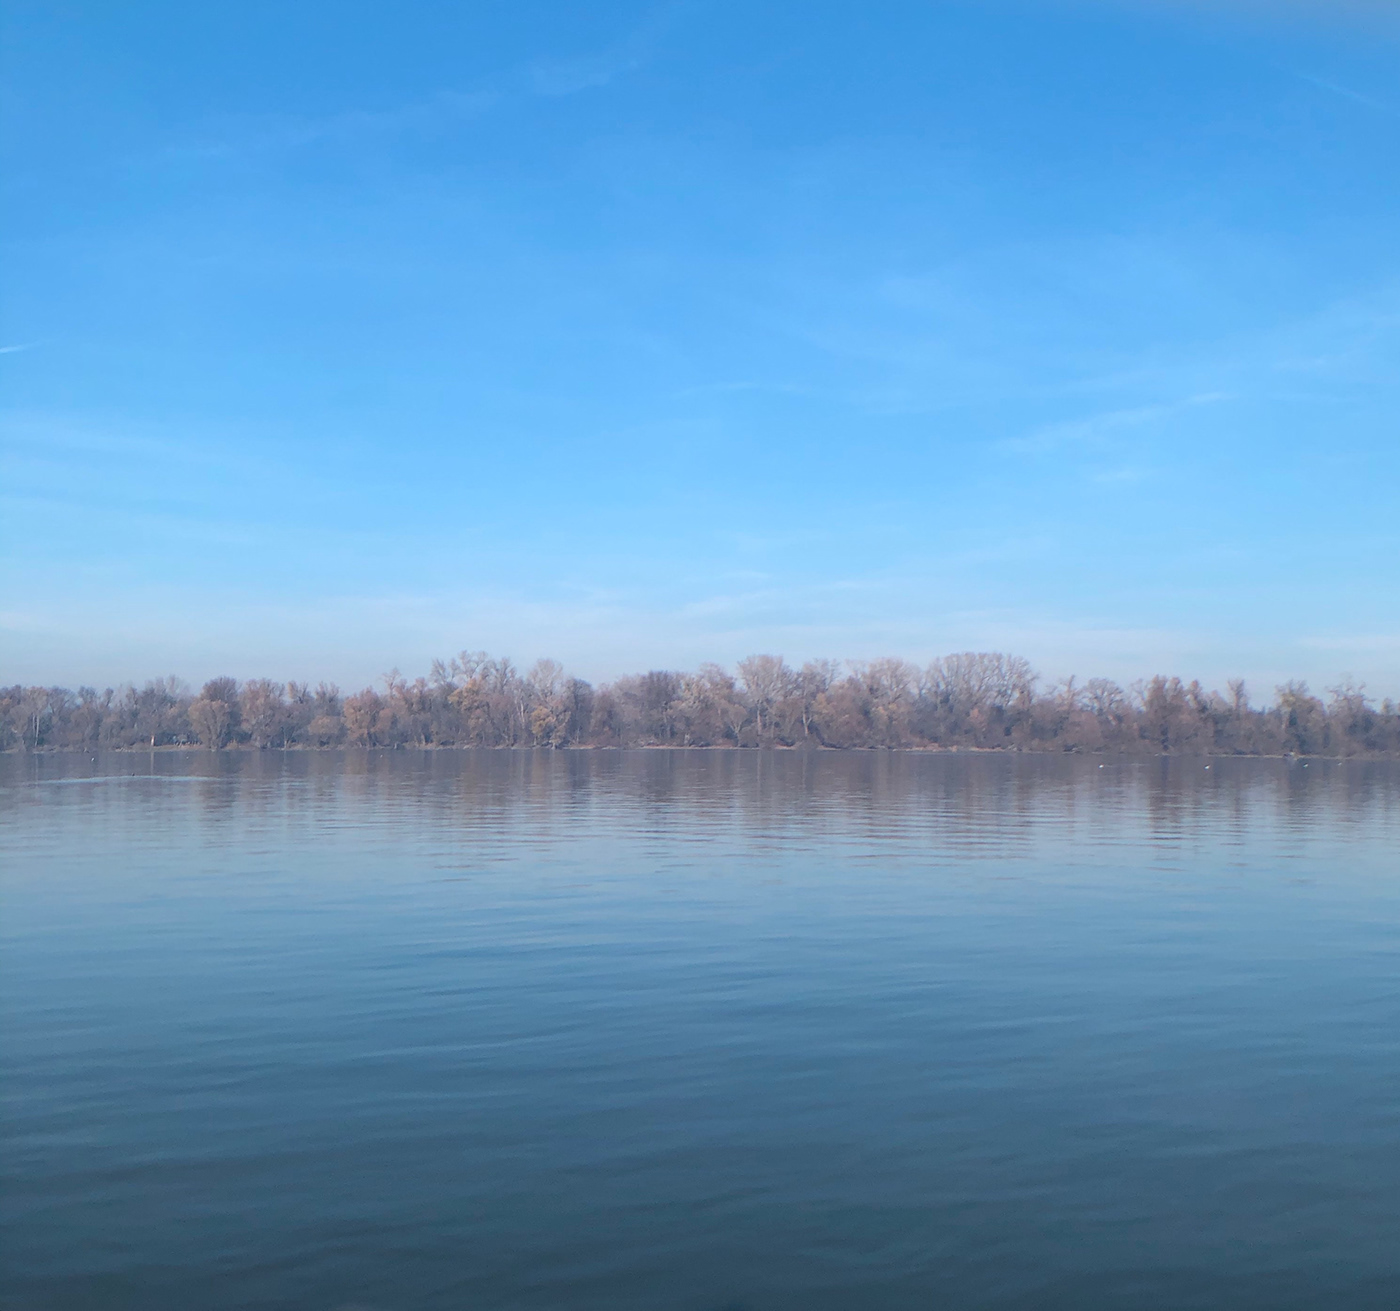 belgrade Danube river